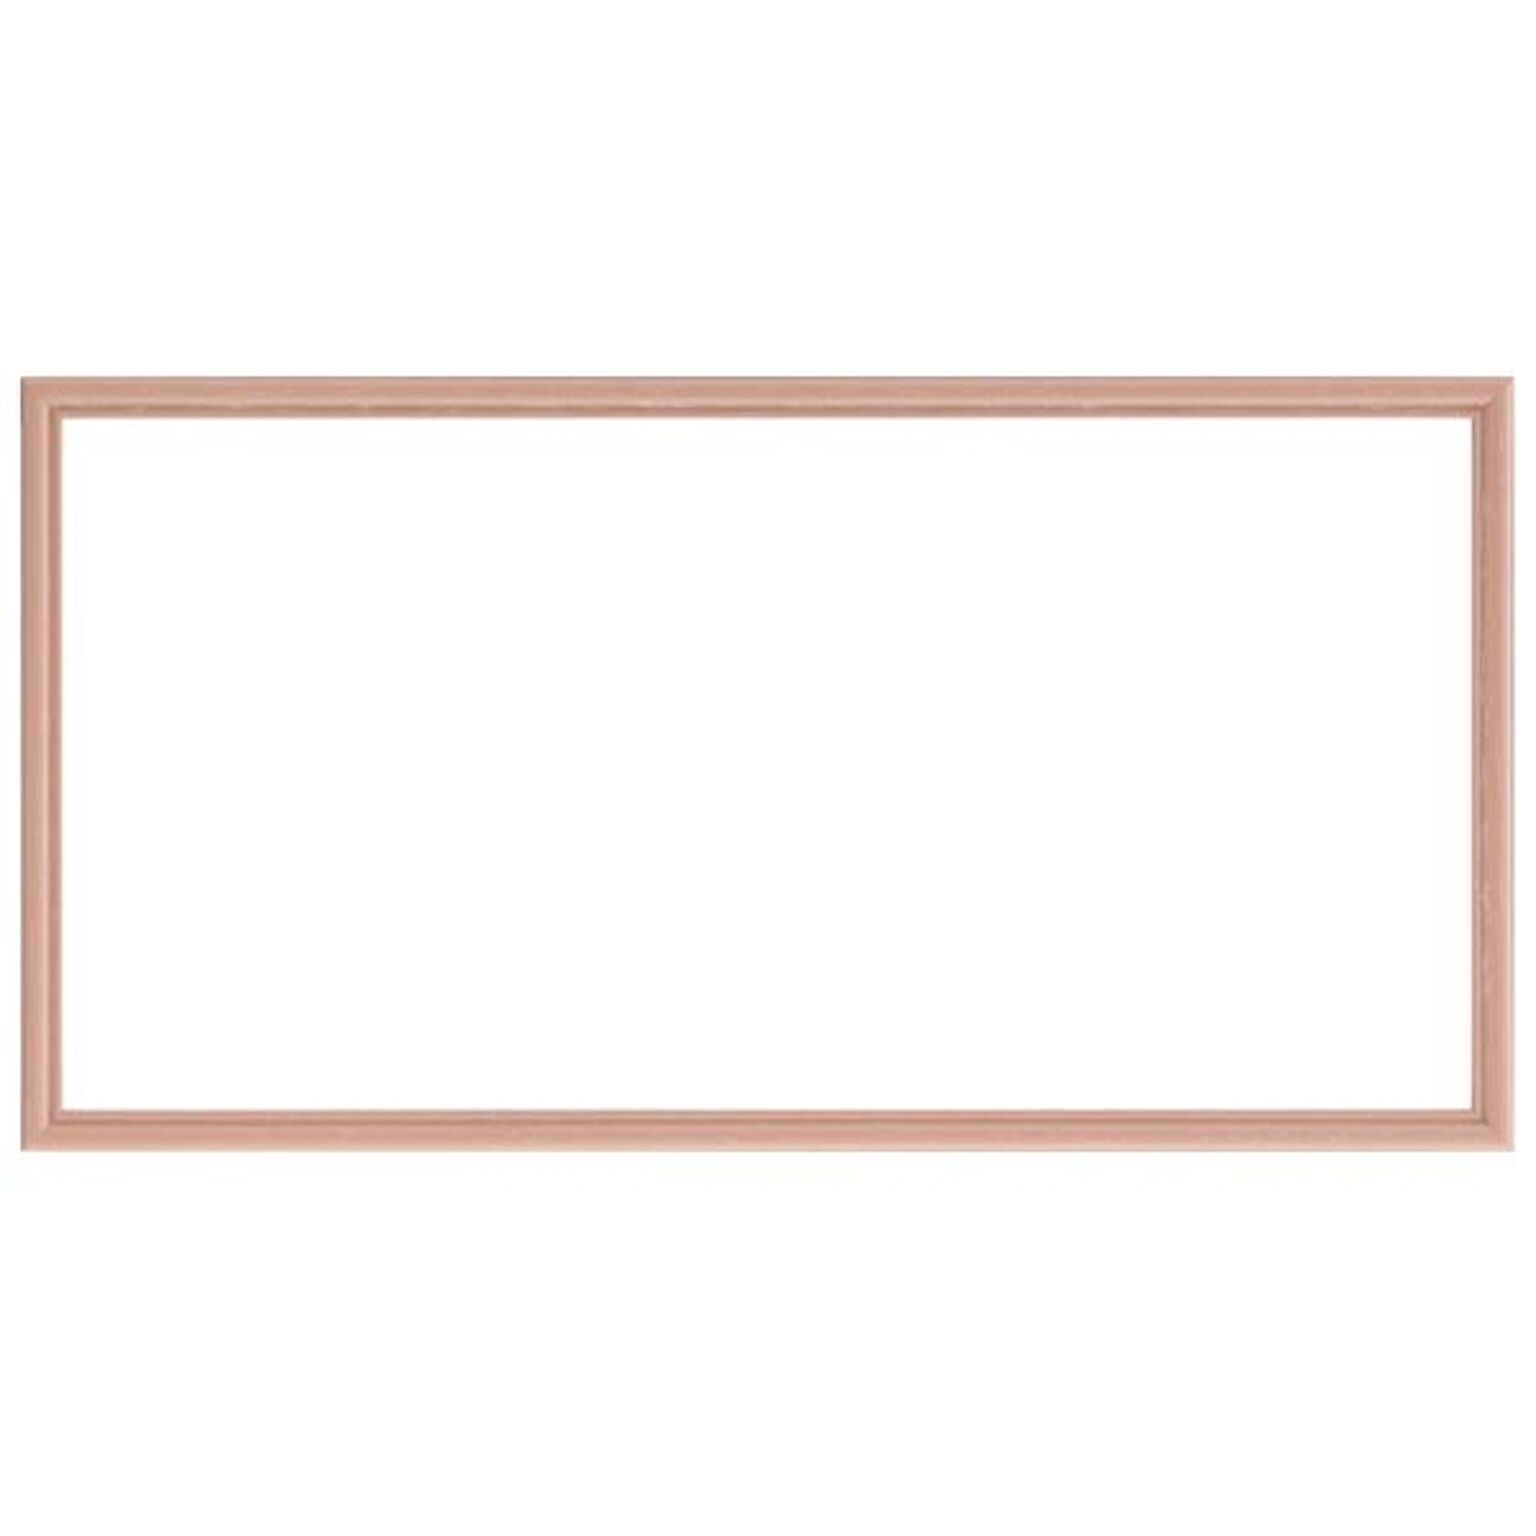 ナチュラル仕様 額縁/フレーム 【横長型 500×150 ピンク】 吊金具付き 木製